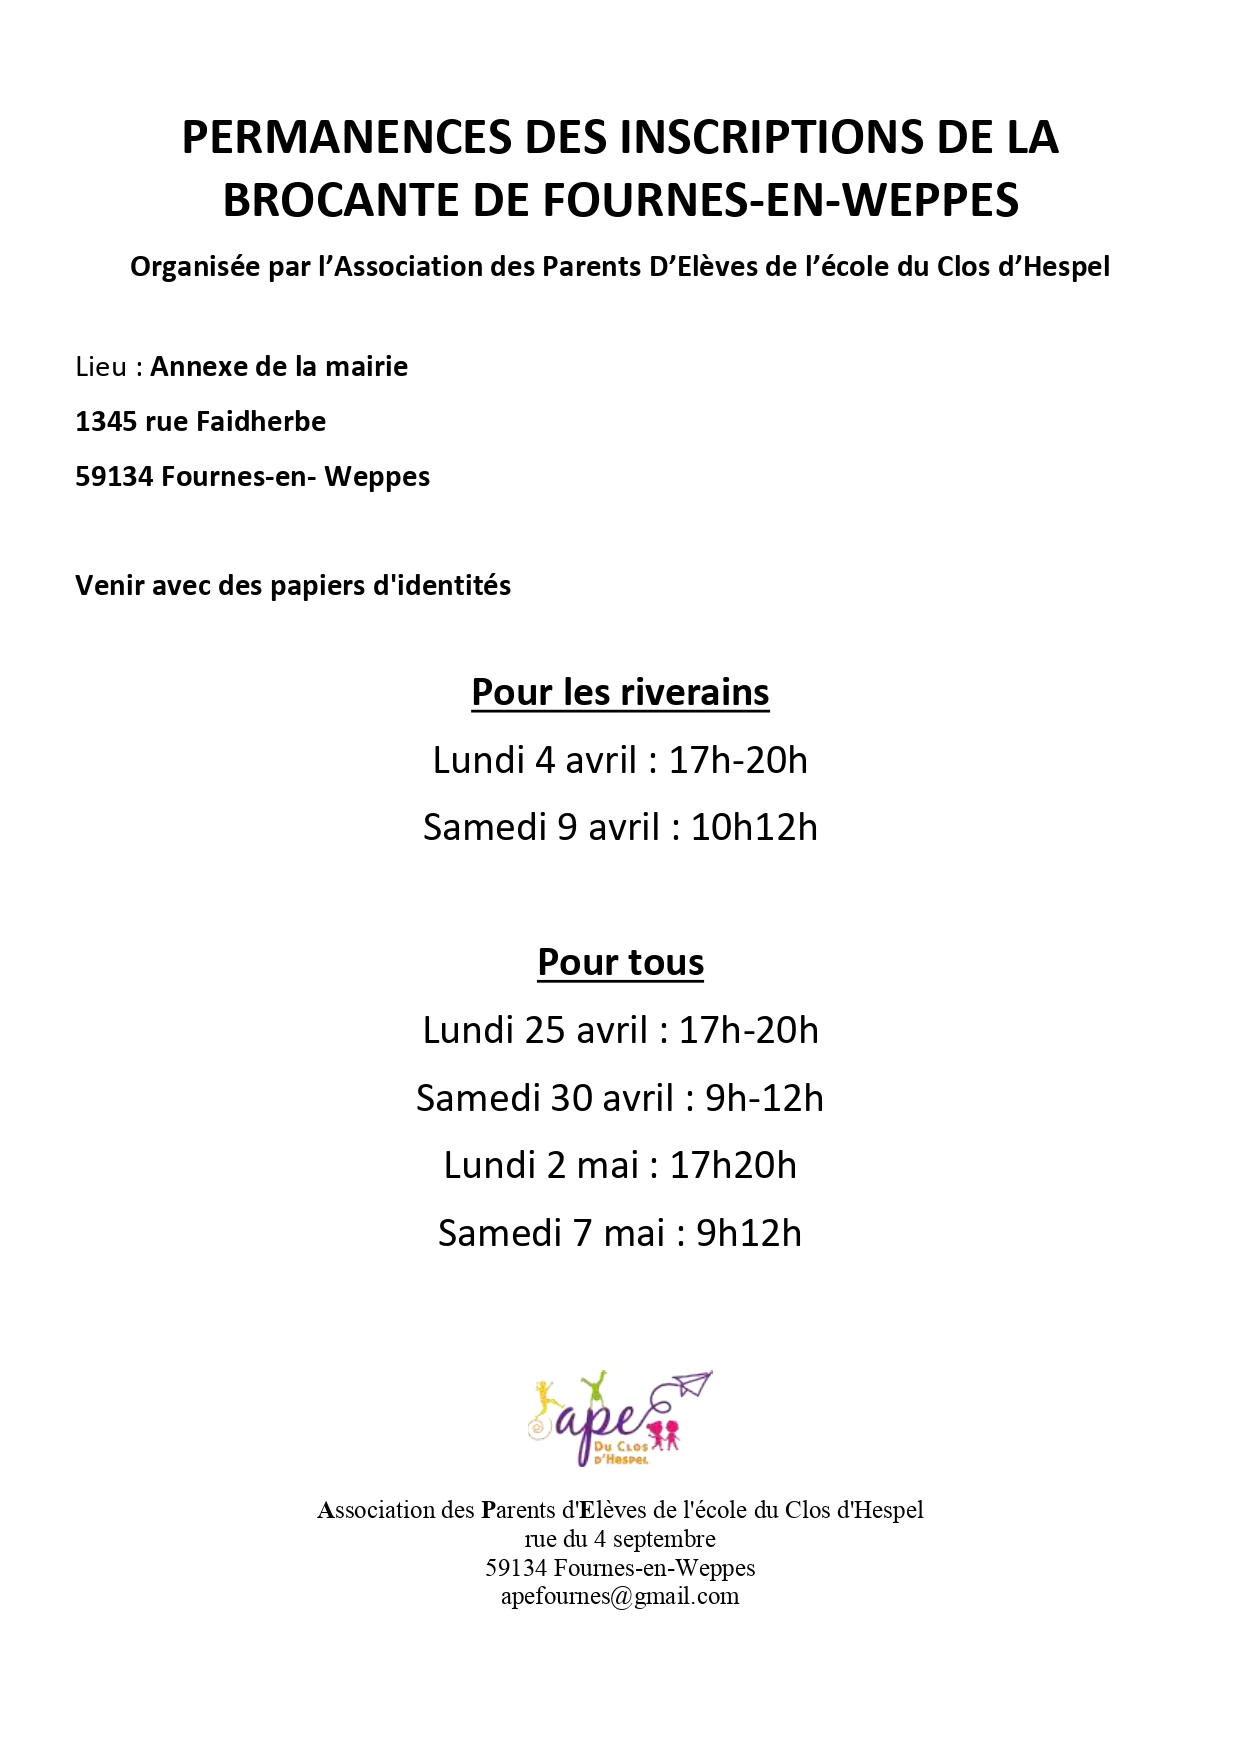 PERMANENCES DES INSCRIPTIONS DE LA BROCANTE DE FOURNES page 0001